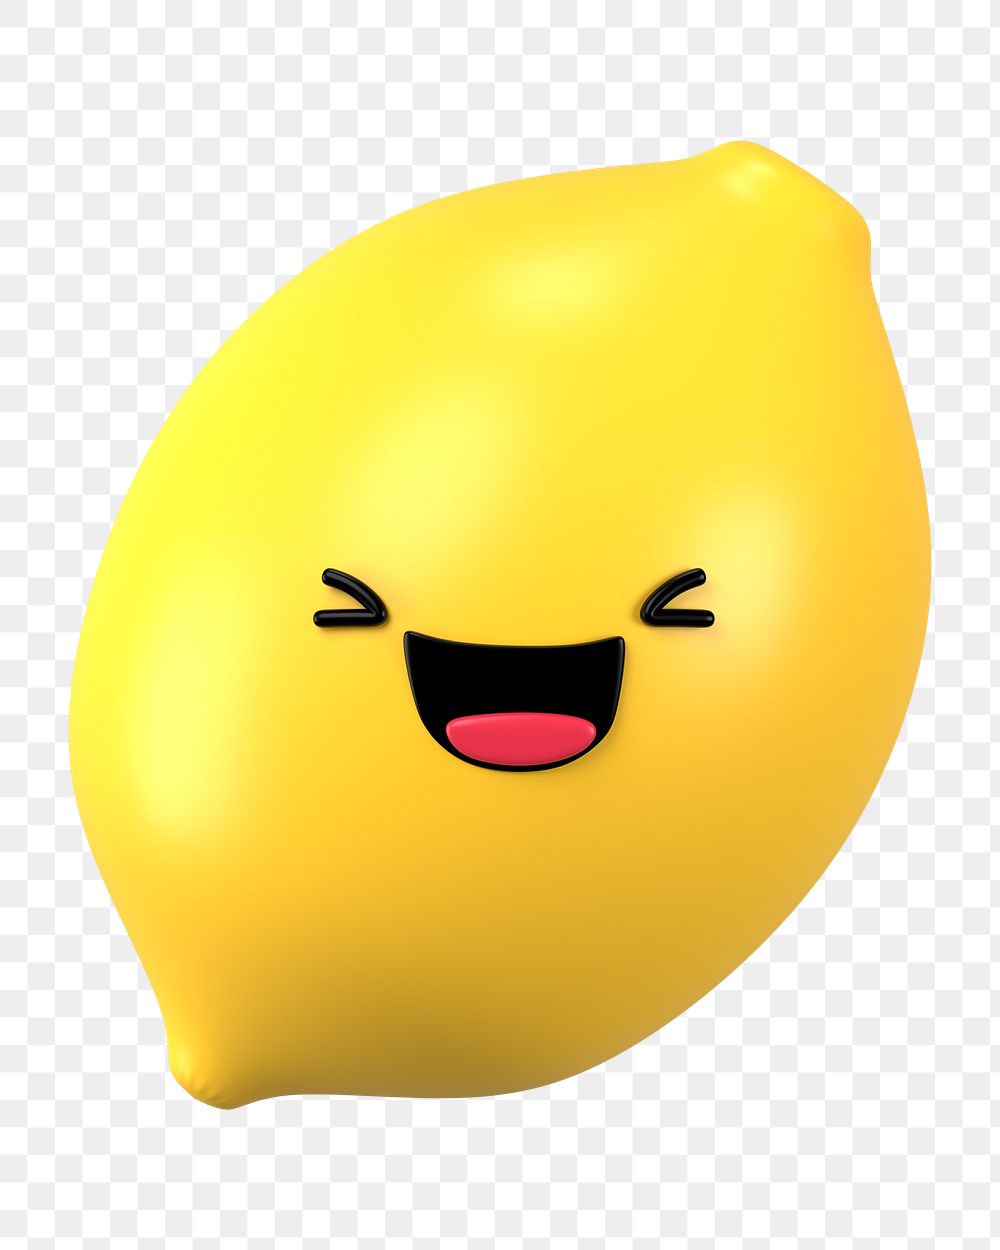 Laughing lemon png 3D emoticon, transparent background